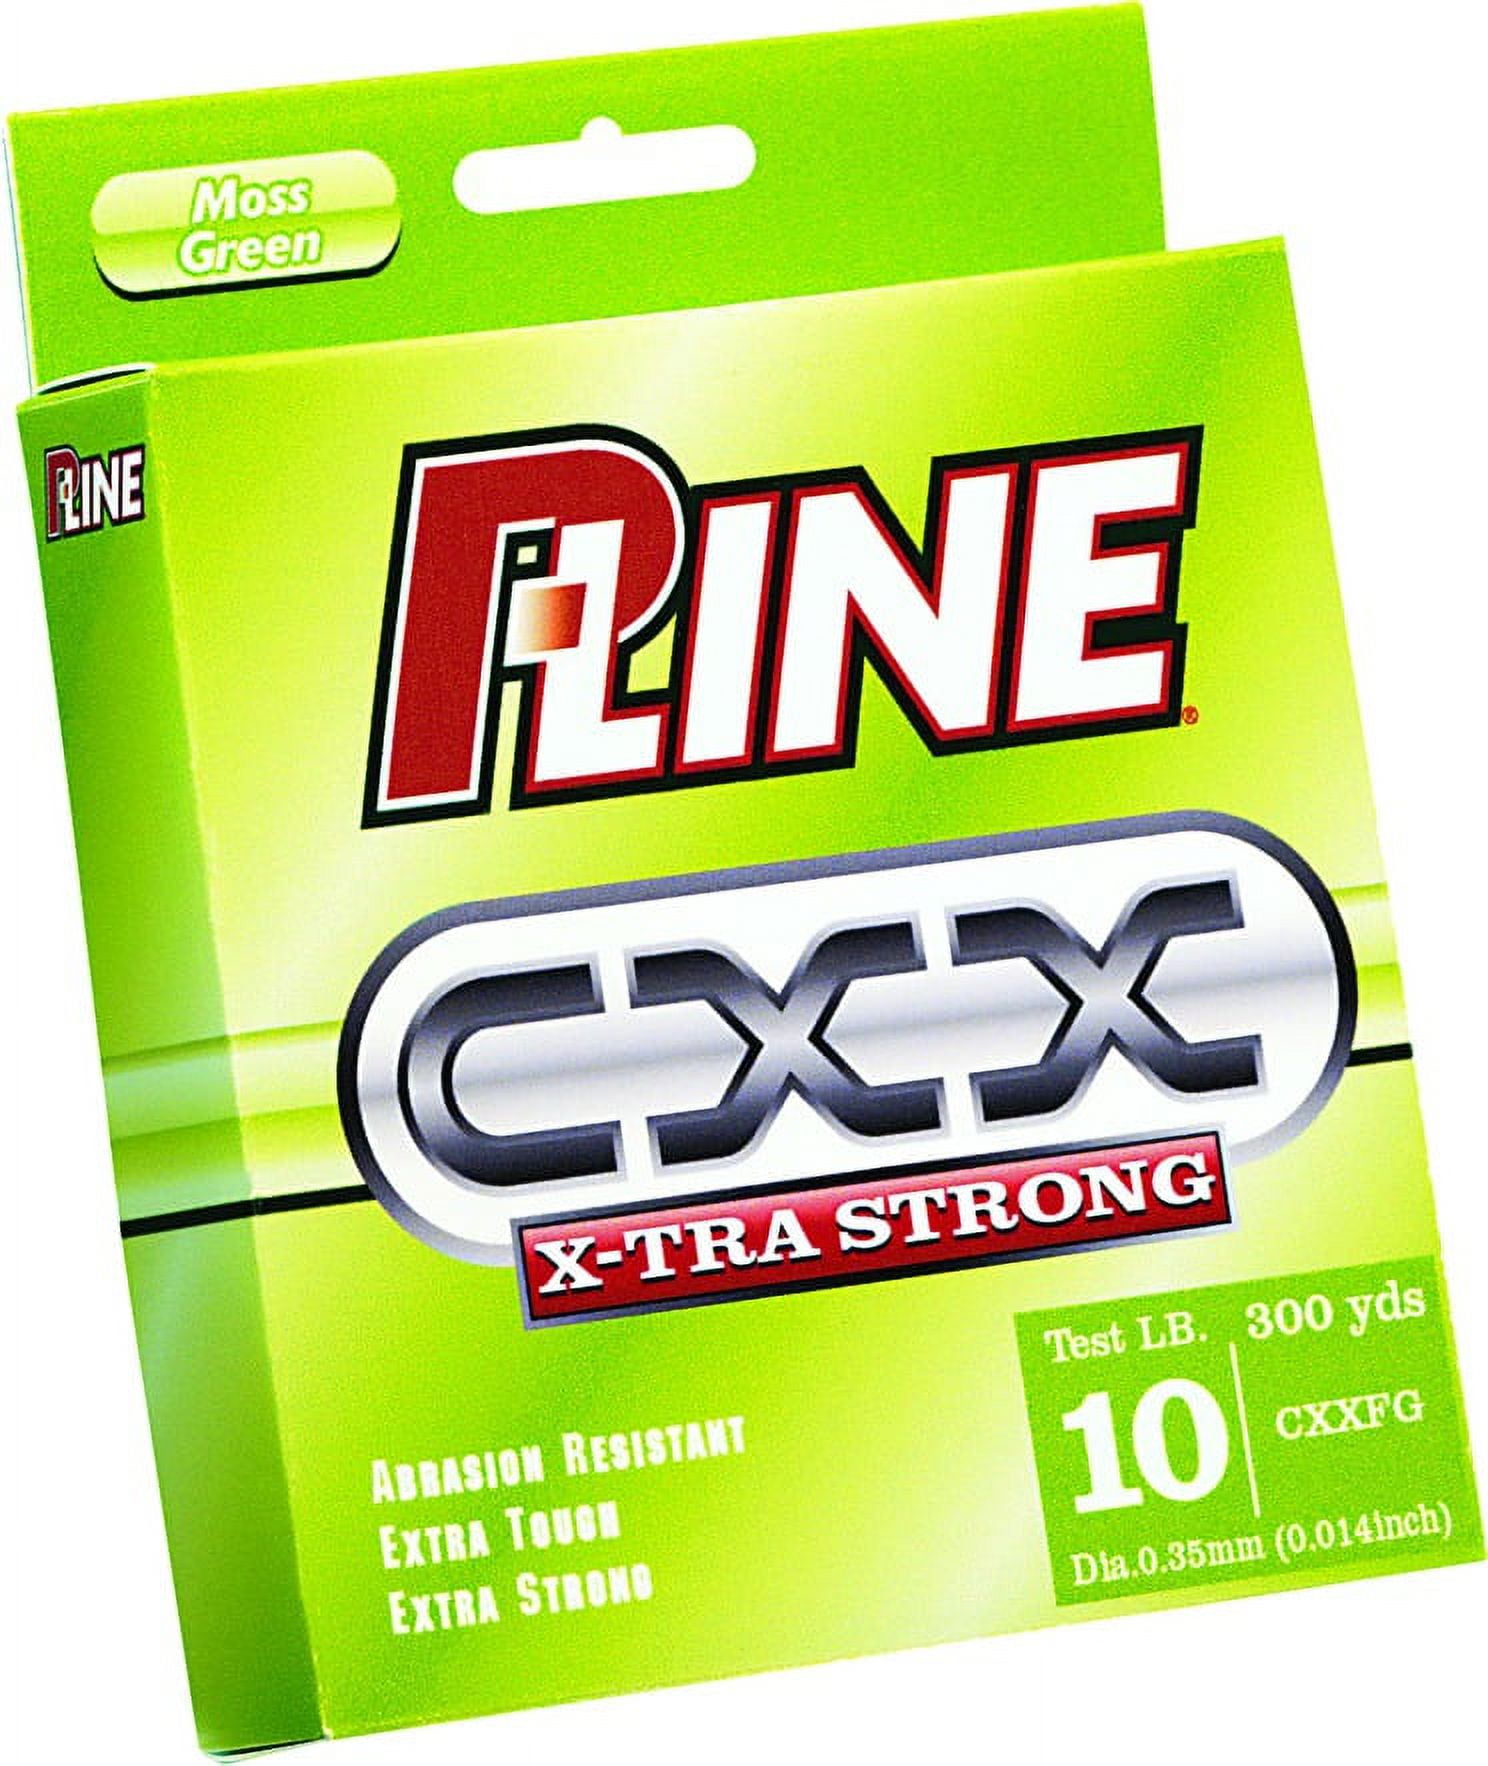 P-LINE 1000 MT CXX MOSS GREEN